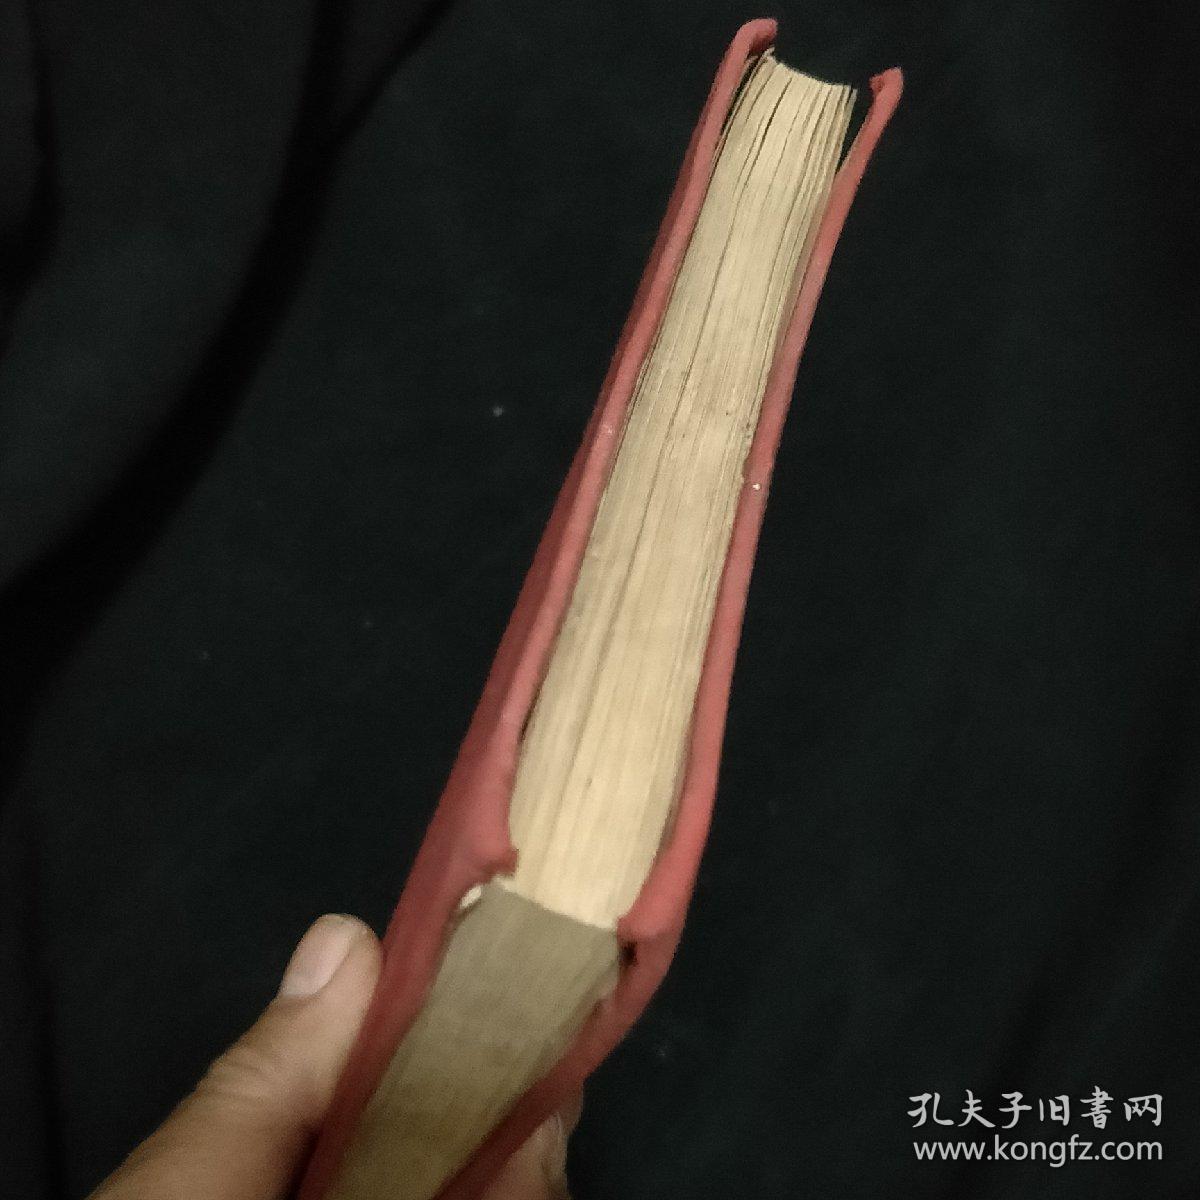 老日记本《纪念册》有毛主席 朱德像 黑龙江省首届民兵功模及代表大会纪念册 空白 私藏 书品如图